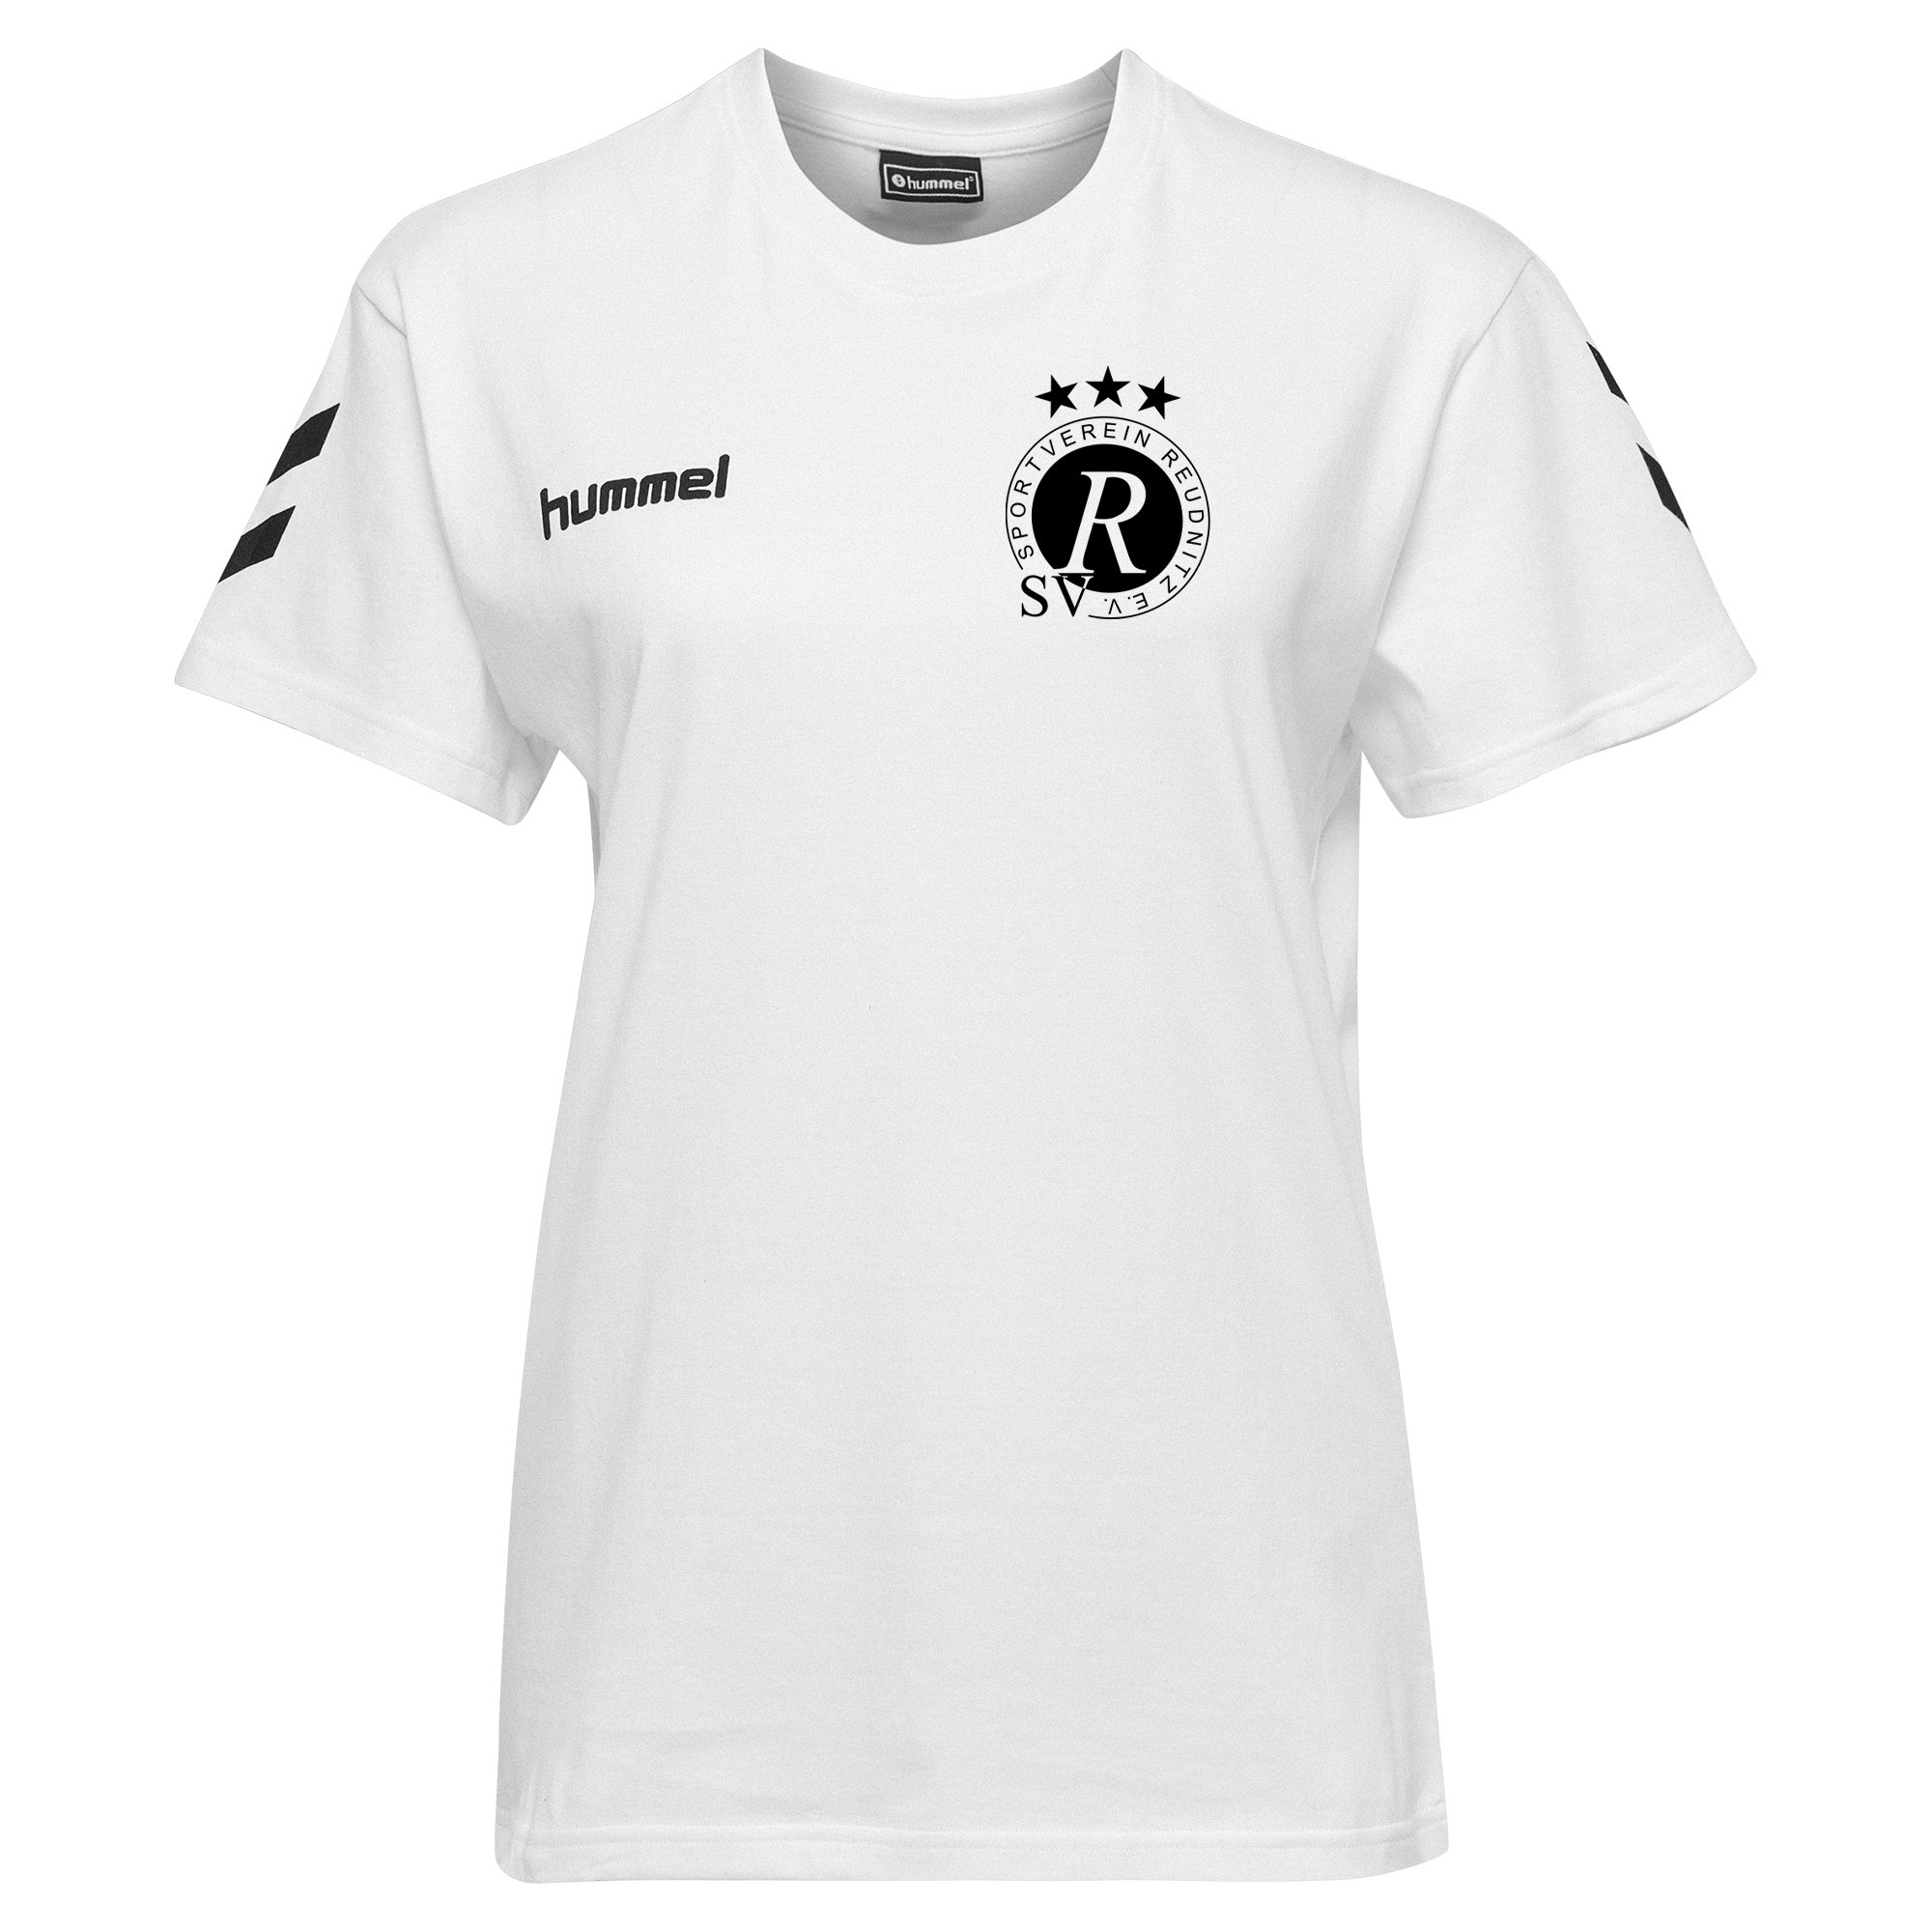 SV Reudnitz T-Shirt Damen